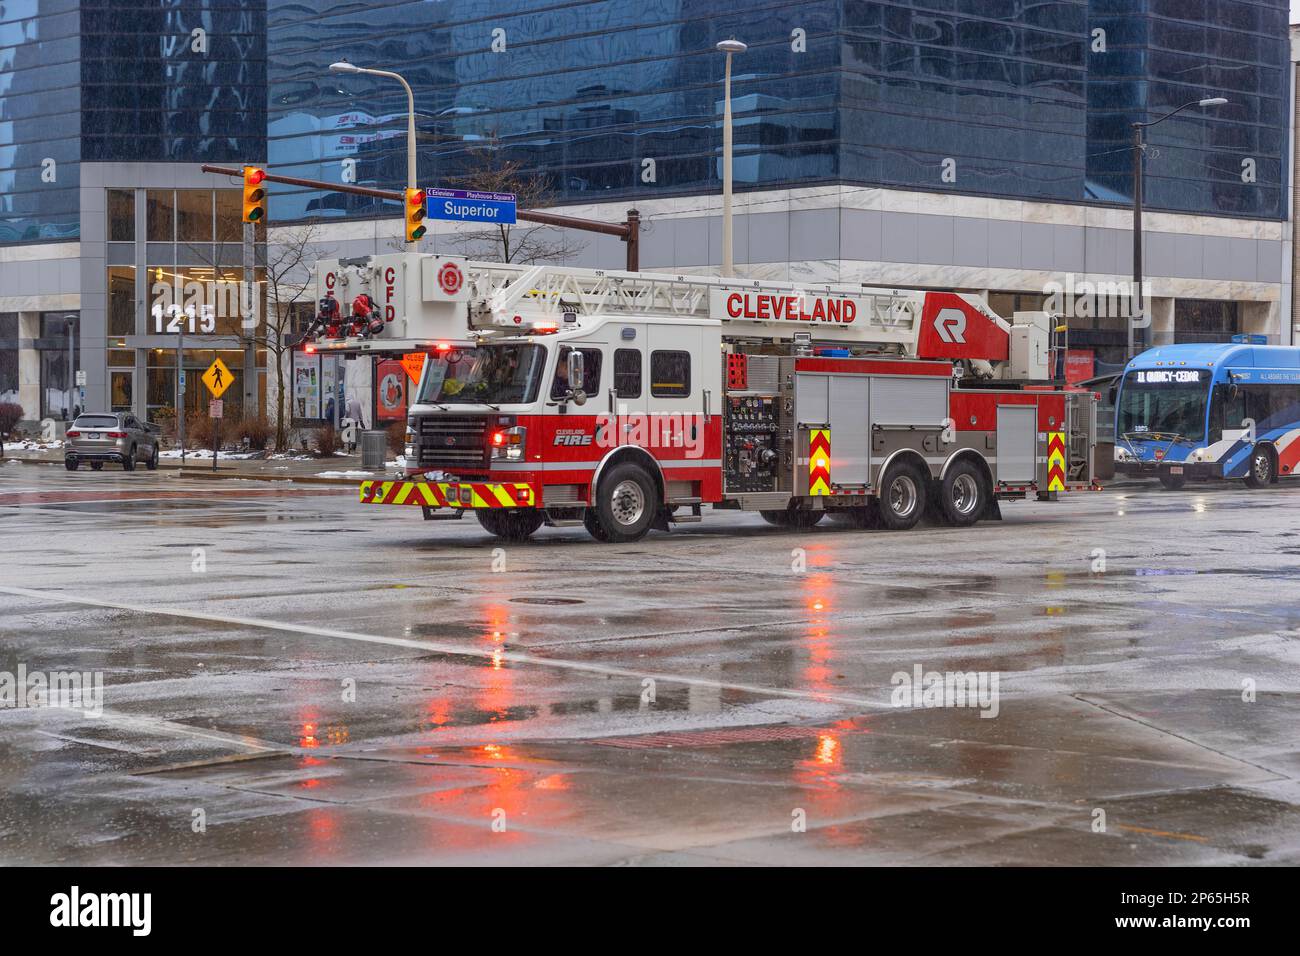 Cleveland, Ohio, USA - 25. Januar 2023: Ein Feuerwehrauto überquert eine Kreuzung auf Notruf im Stadtzentrum. Stockfoto